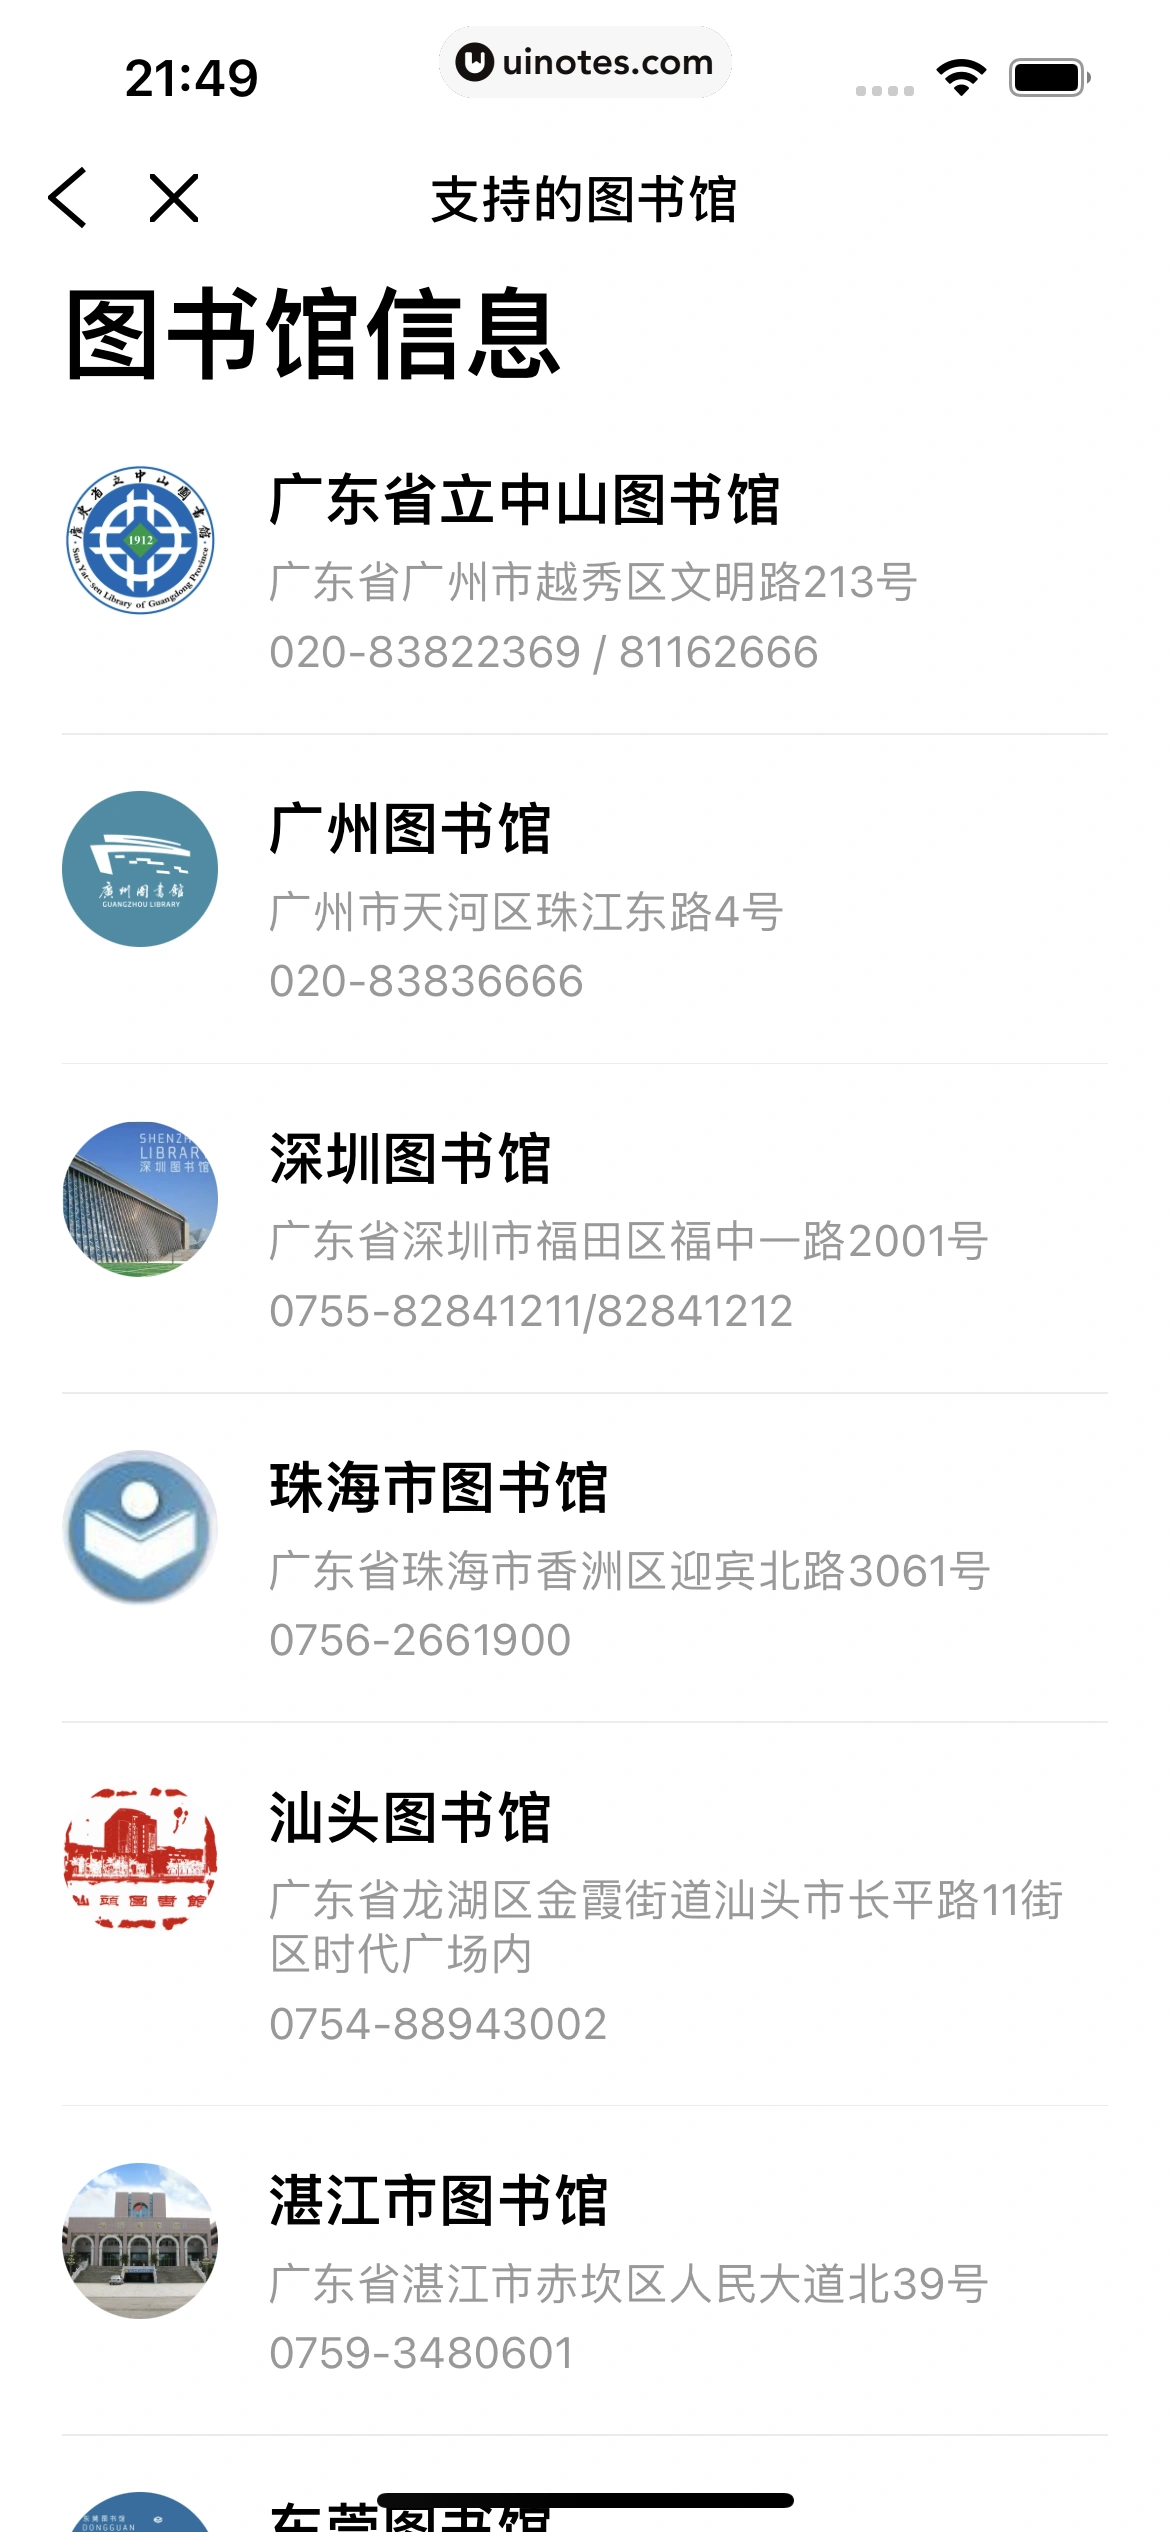 粤省事 App 截图 061 - UI Notes